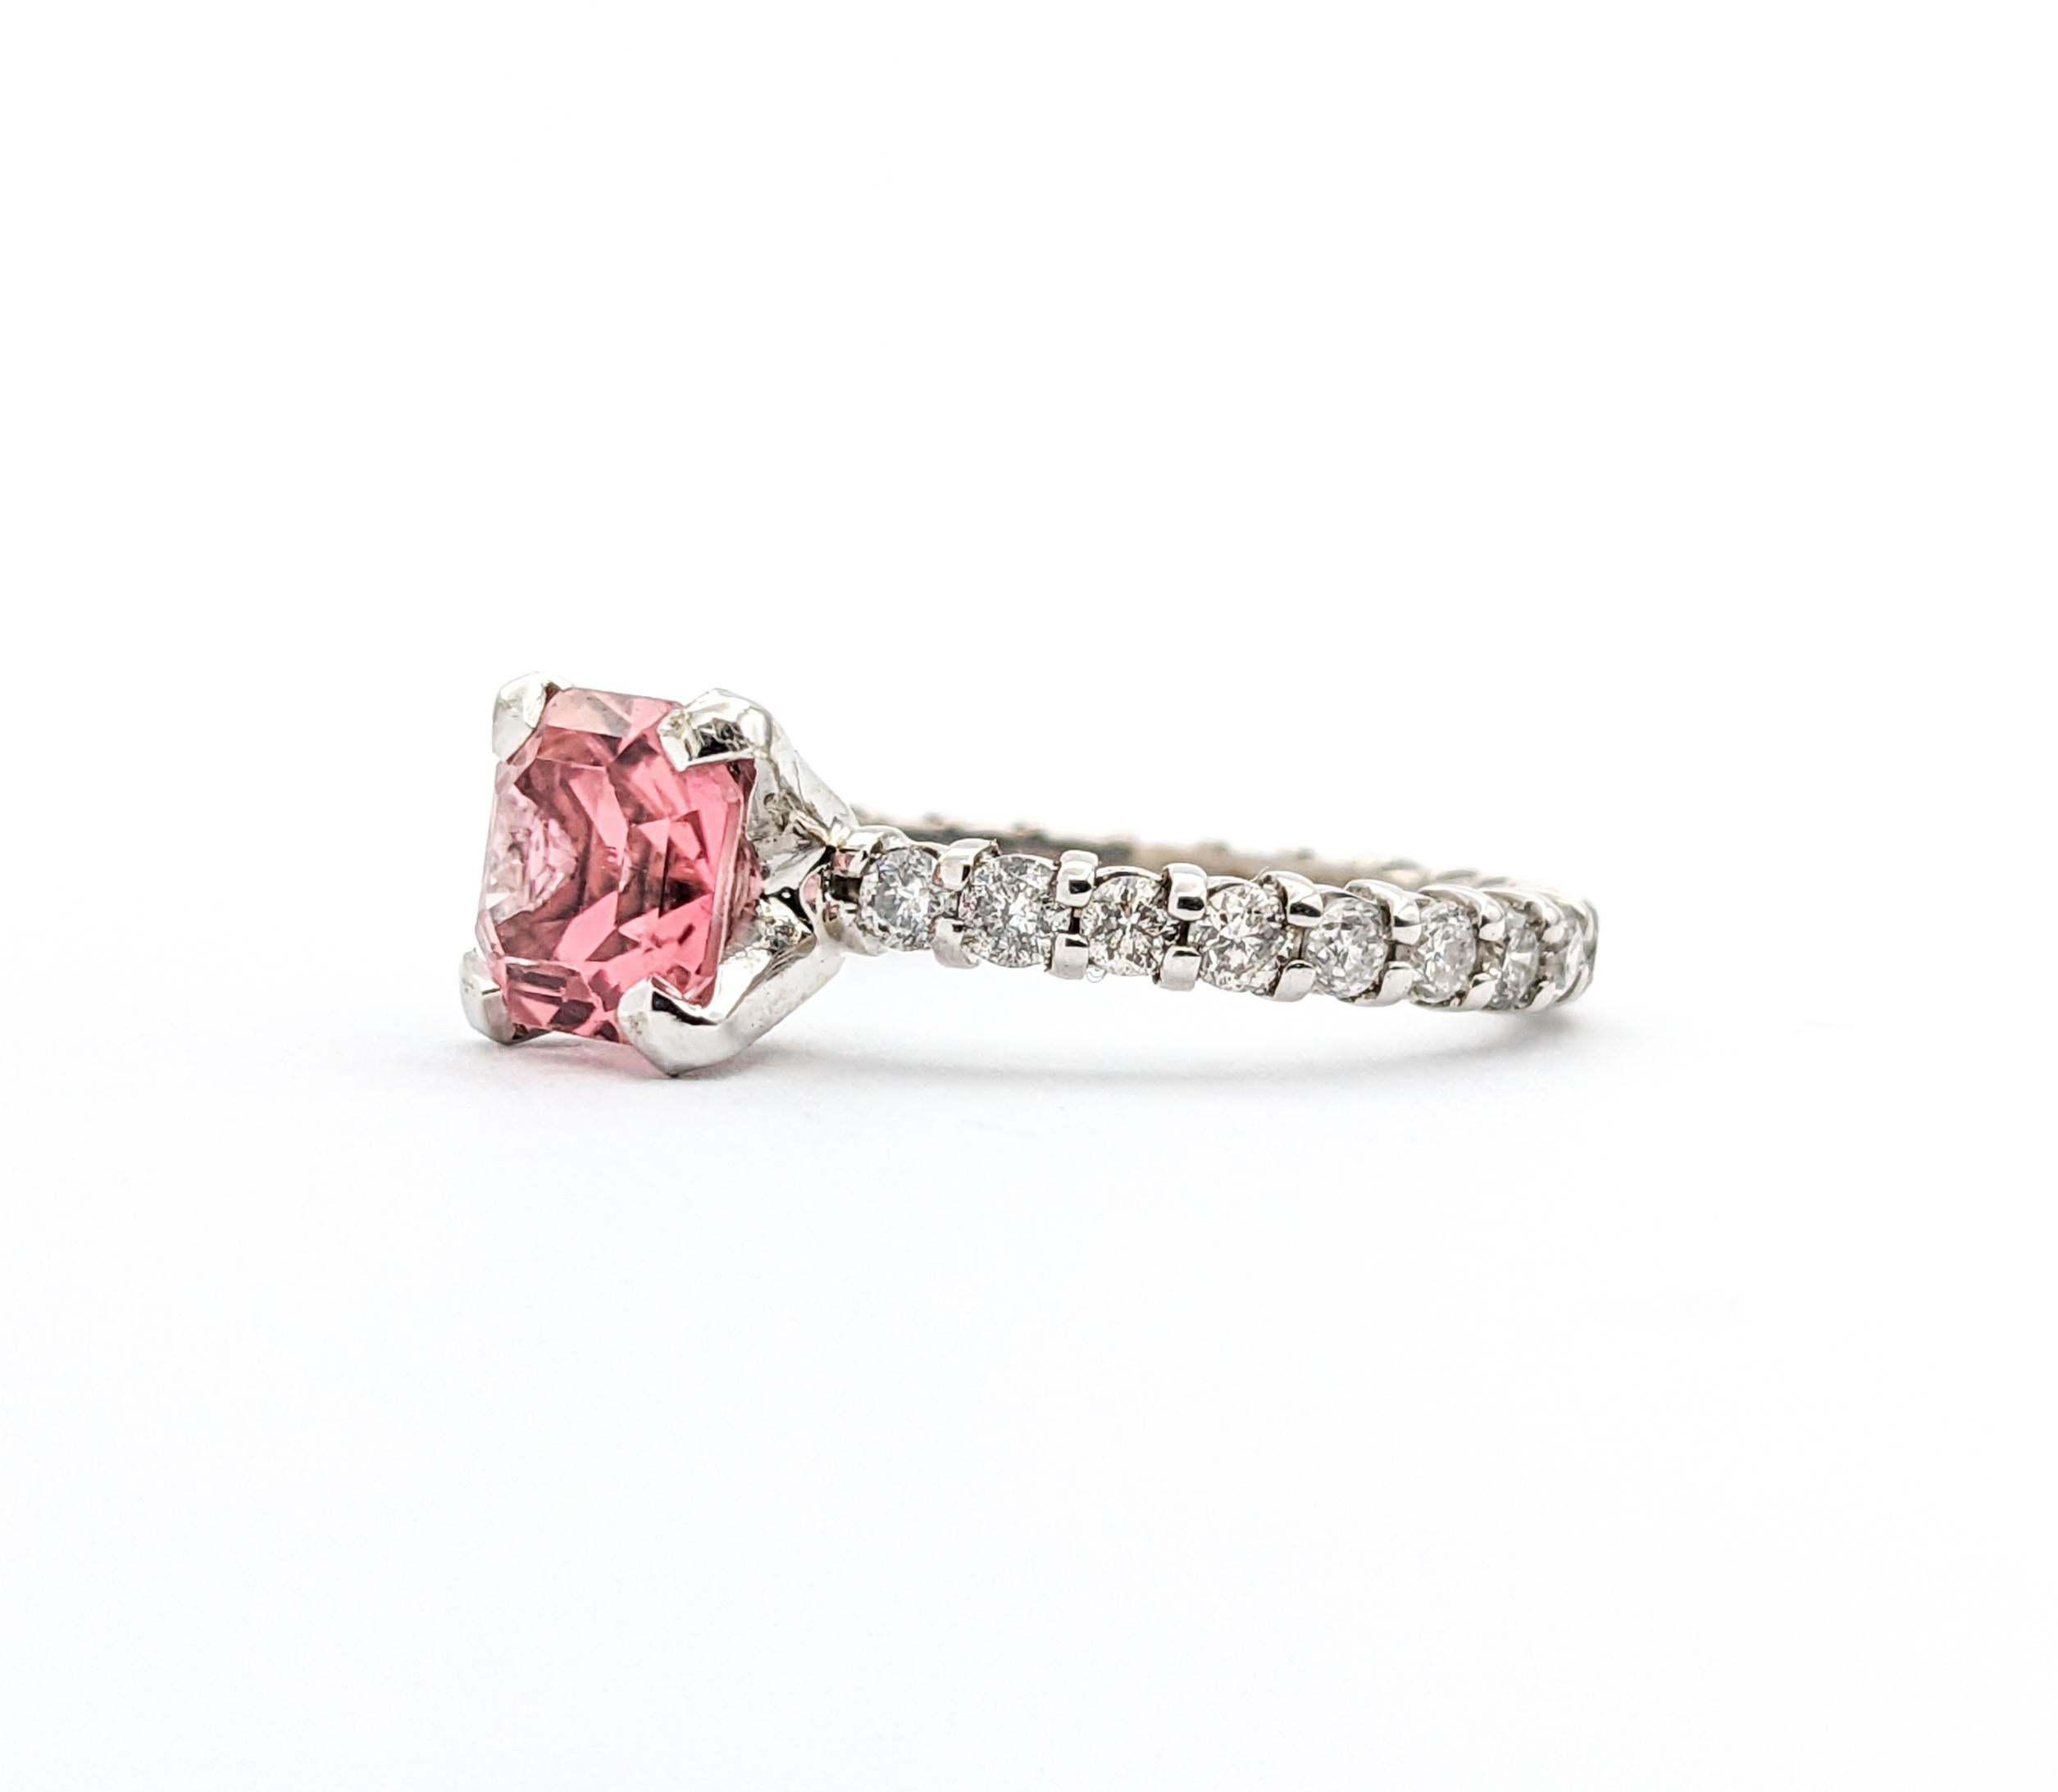 1,17 Karat Rosa Turmalin & Diamant-Ring aus Weißgold

Entdecken Sie die Faszination unseres atemberaubenden Rings, der meisterhaft aus 14 Karat Weißgold gefertigt ist. Dieses exquisite Stück präsentiert 0,60 ct funkelnde Diamanten, jeder mit einer